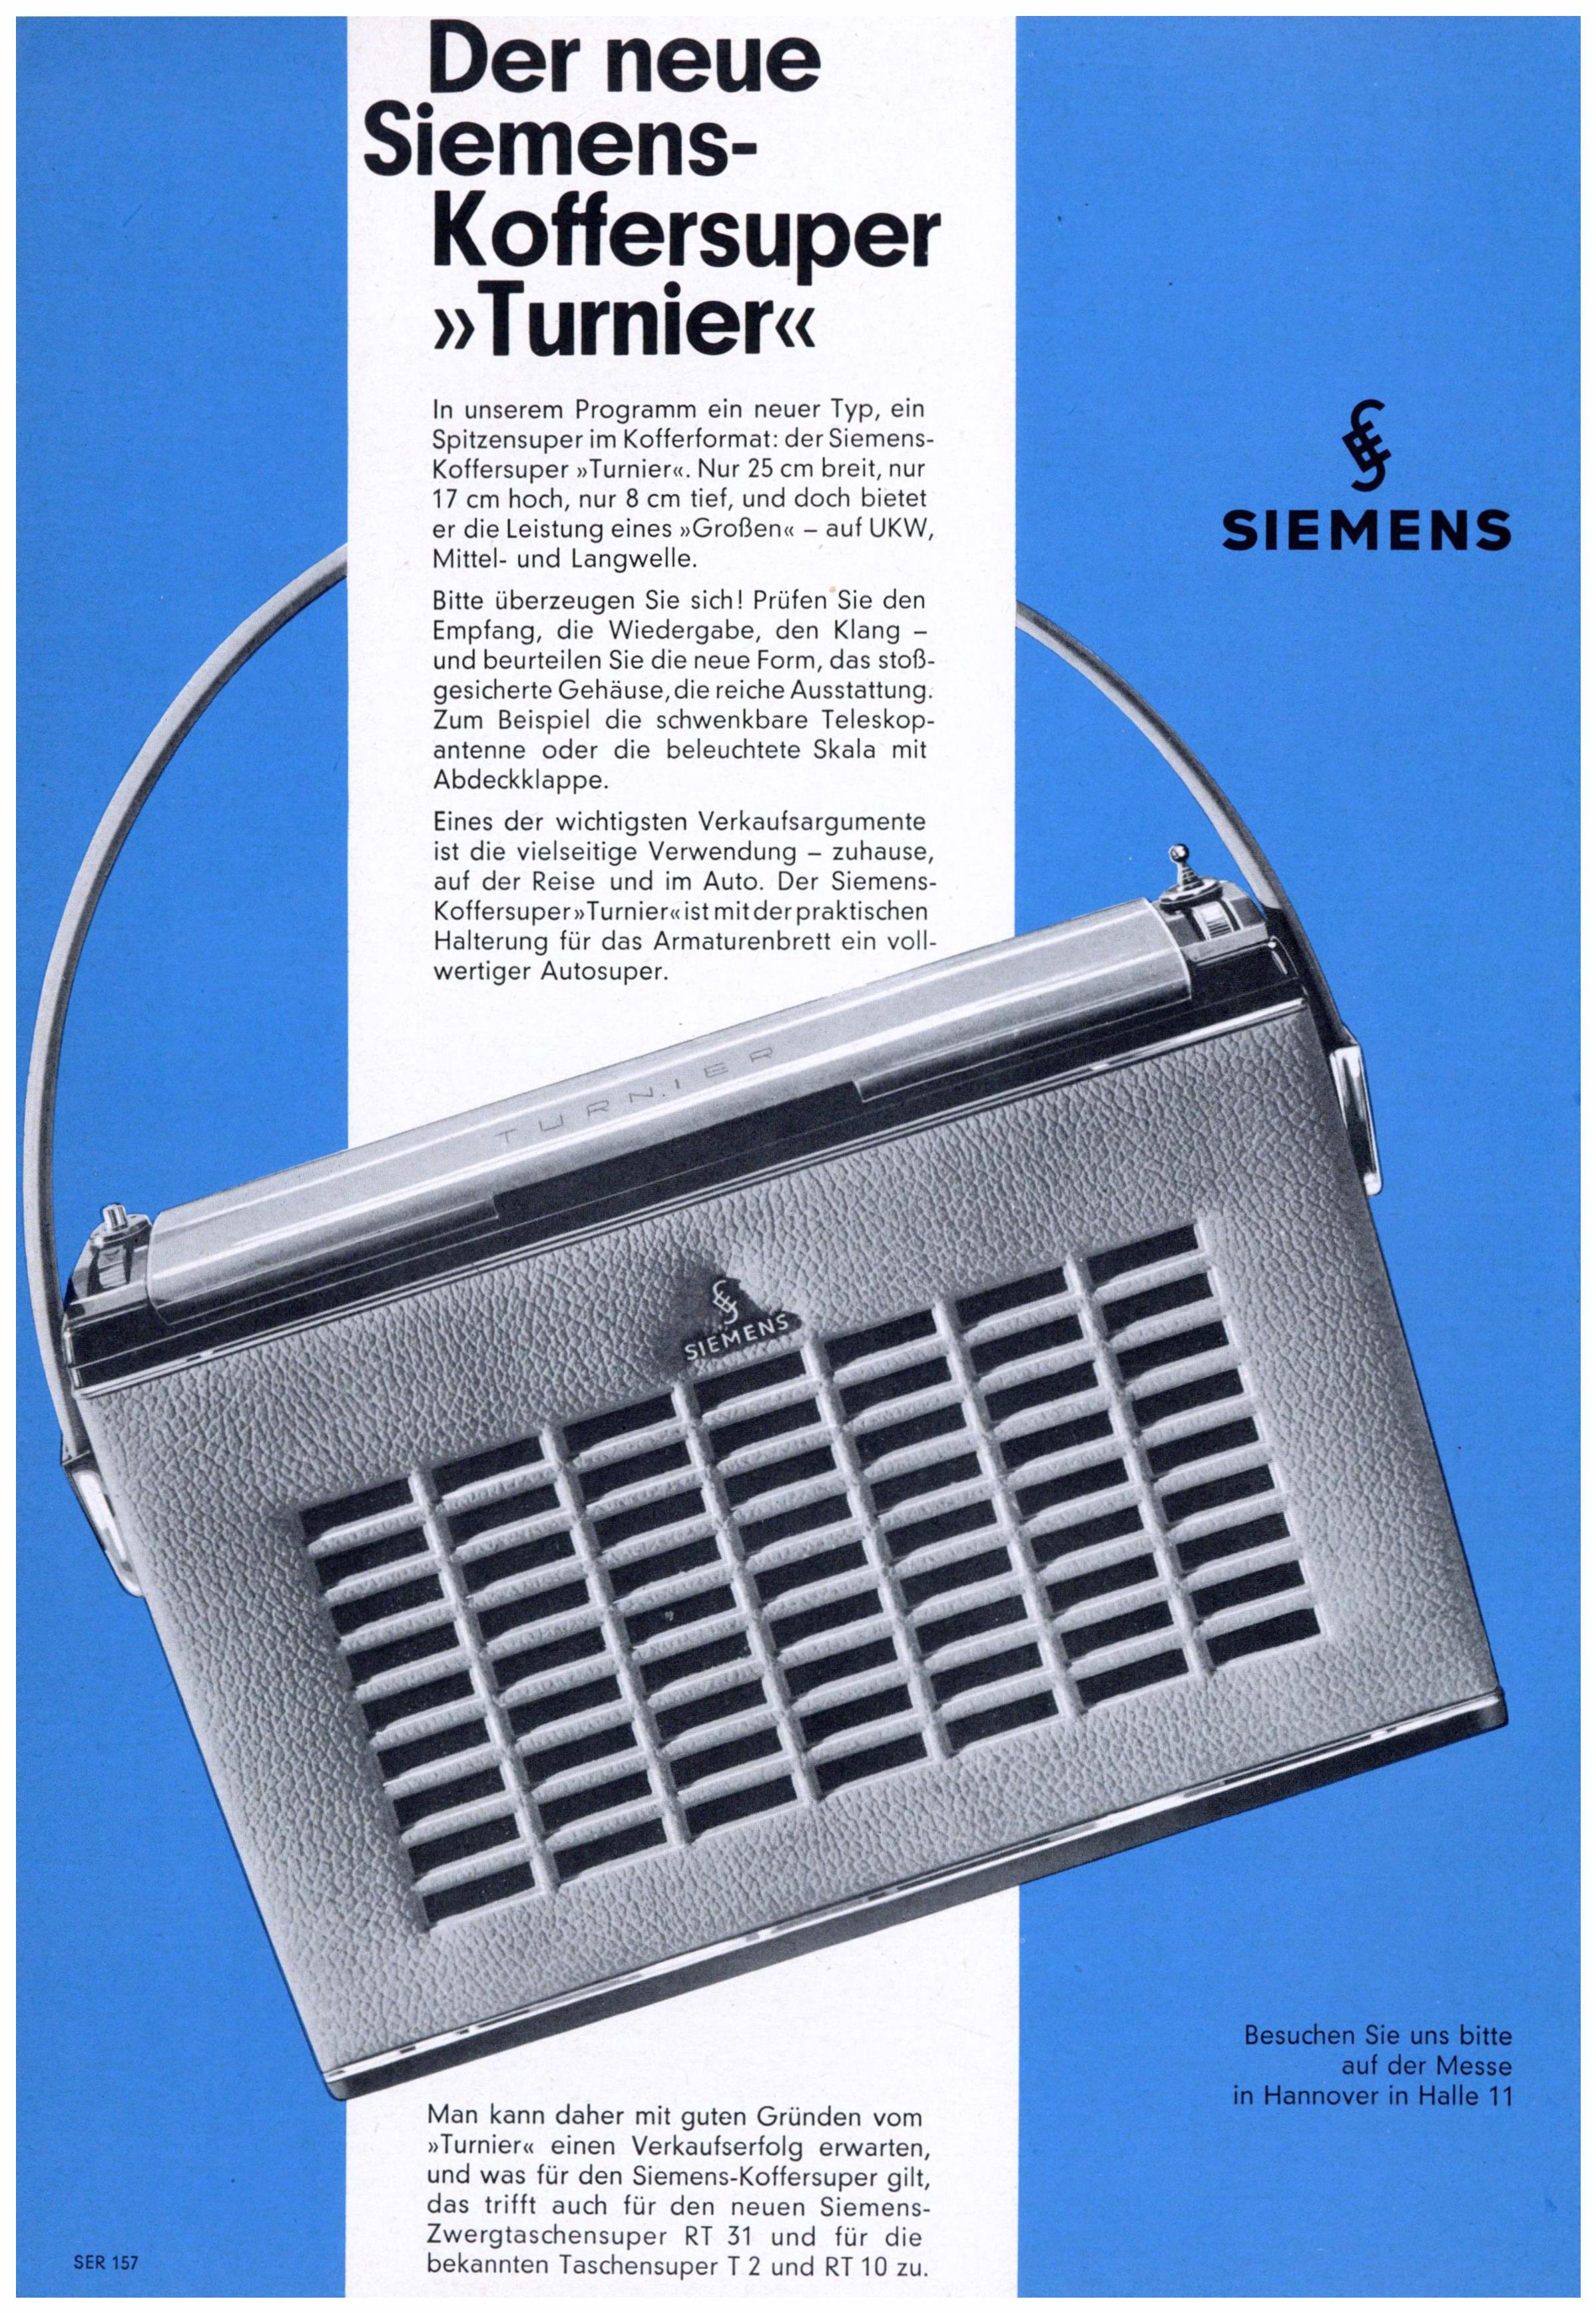 Siemens 1962 41.jpg